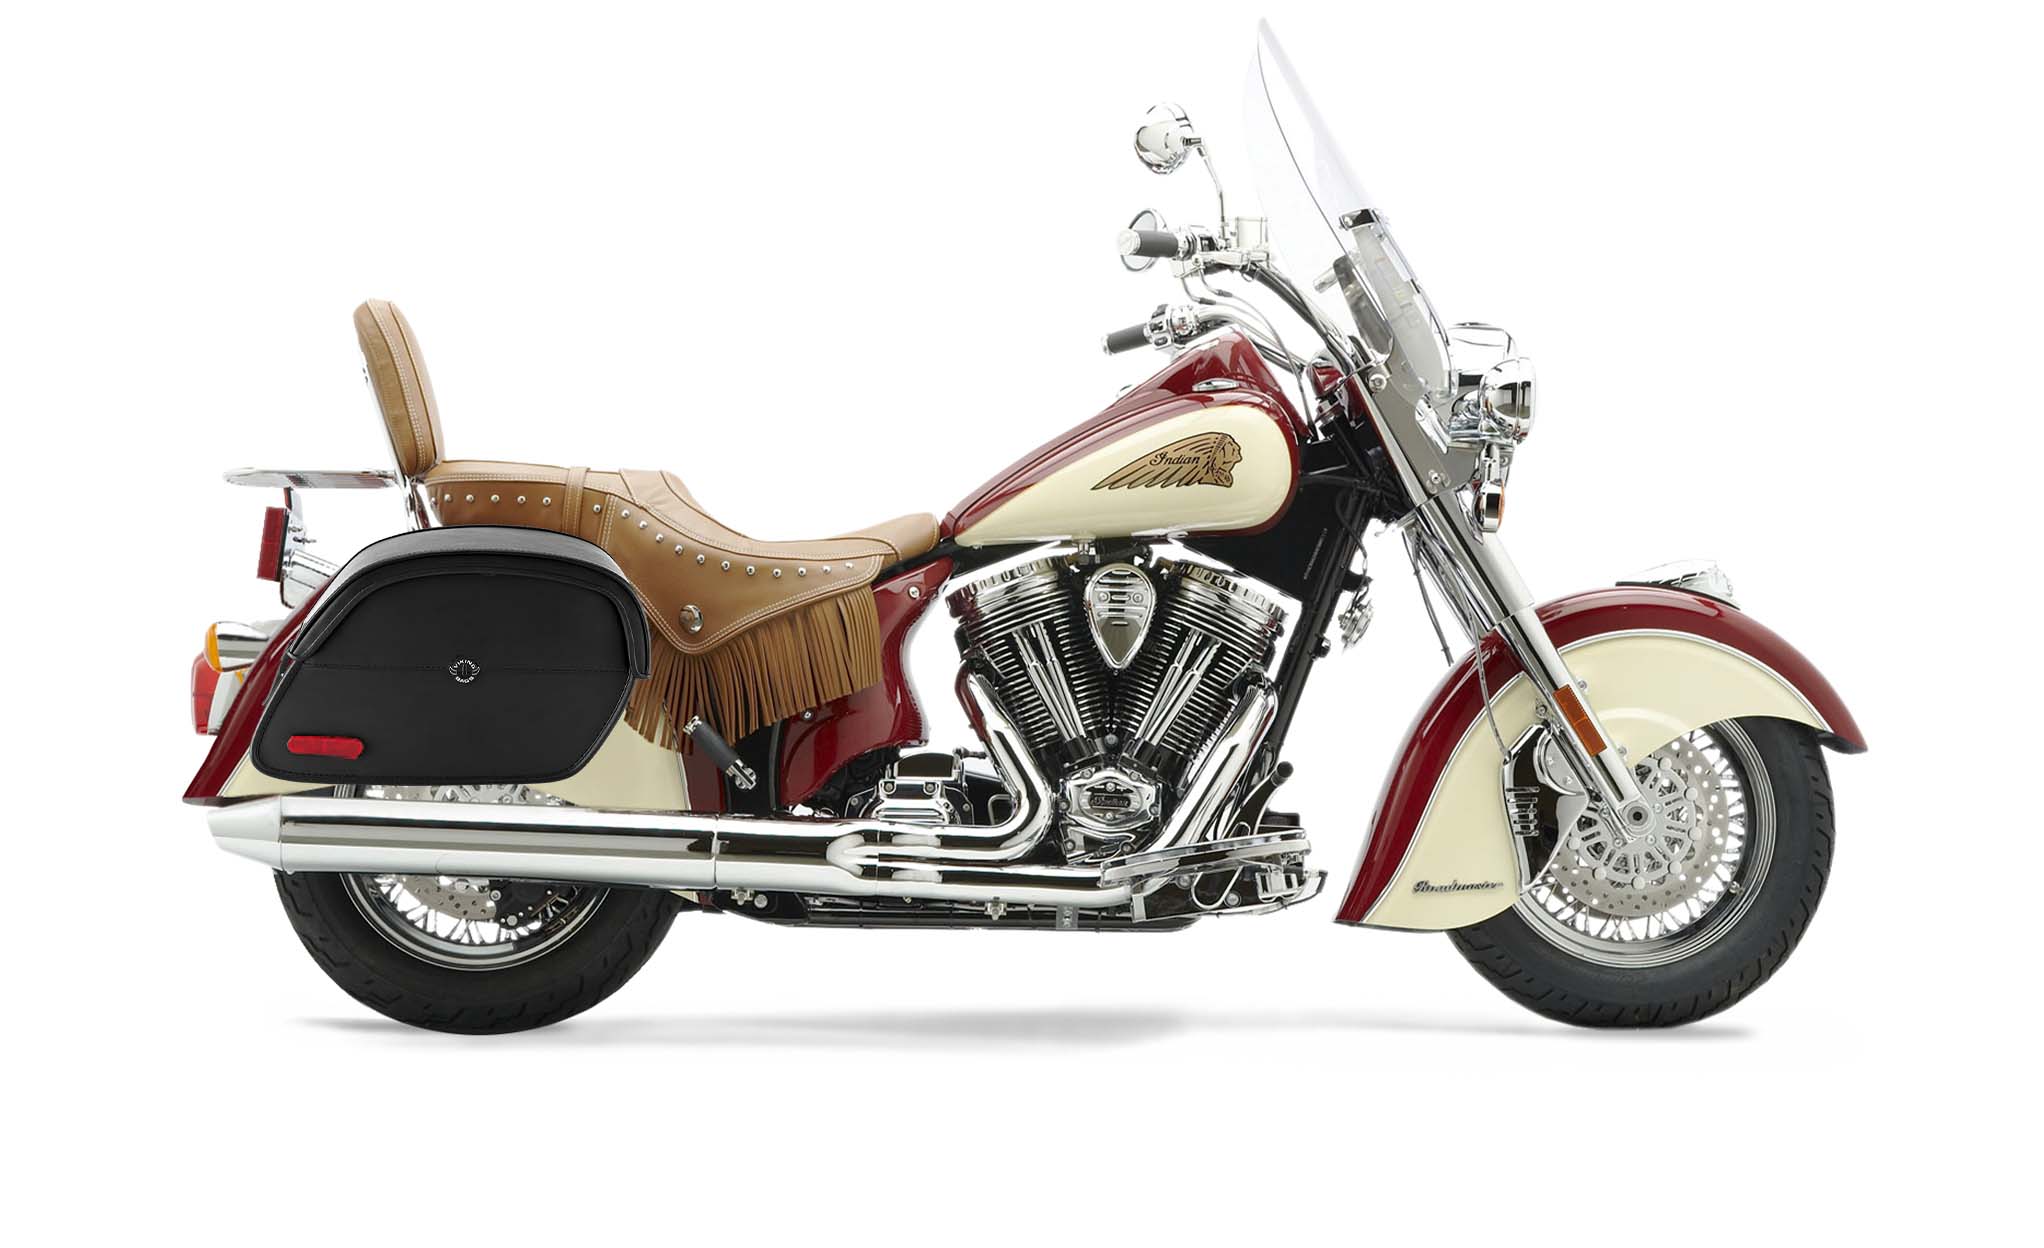 Viking California Large Indian Chief Roadmaster Leather Motorcycle Saddlebags on Bike Photo @expand